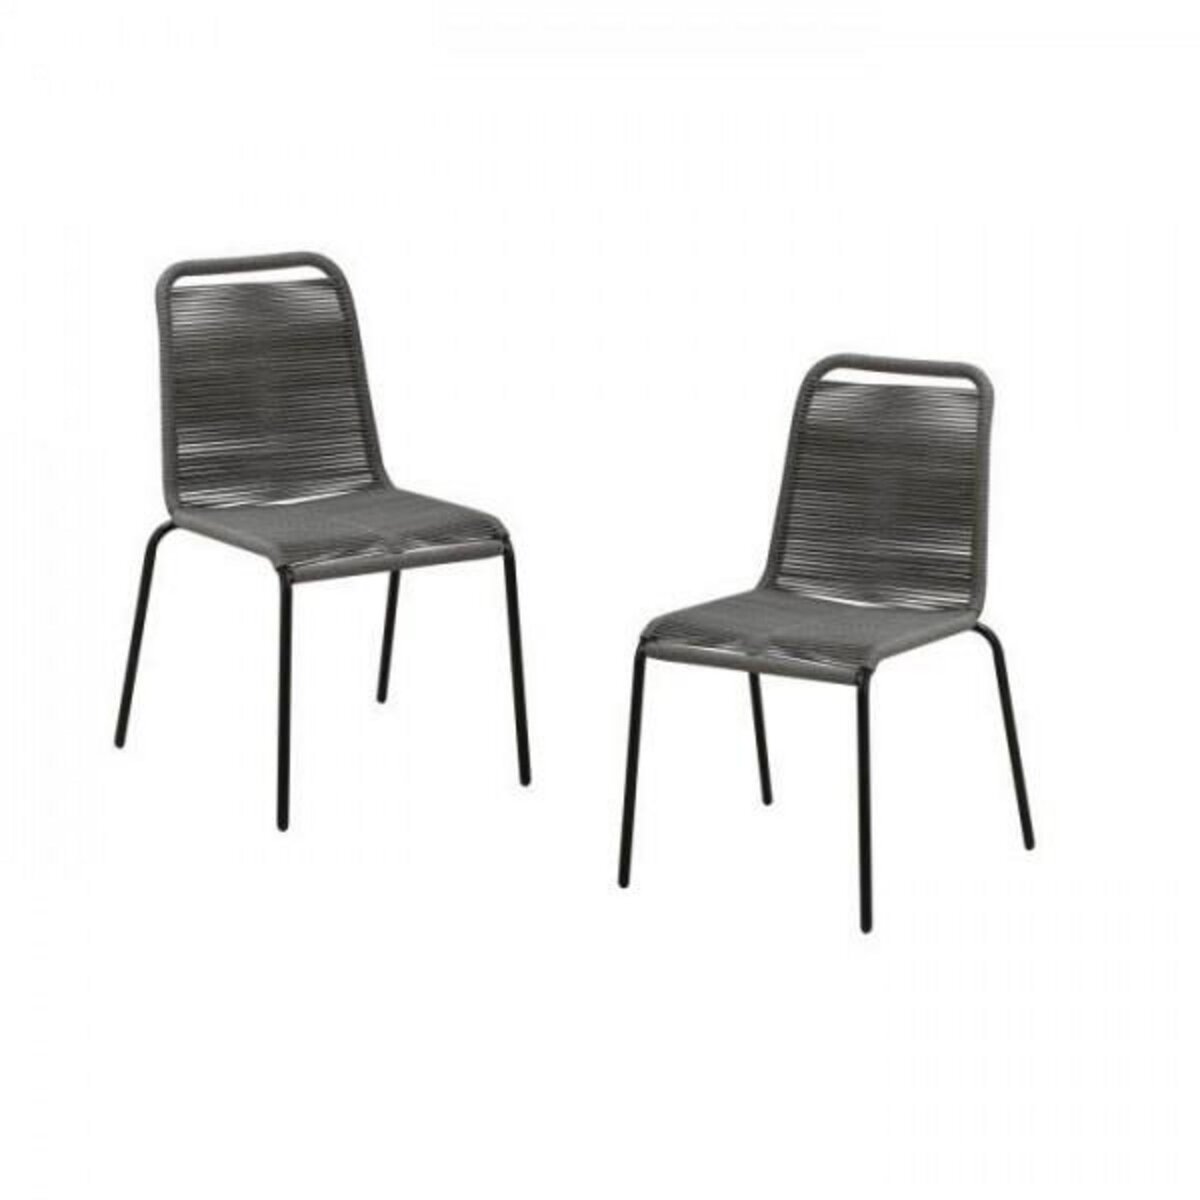 MARKET24 Lot de 2 chaises de jardin - Métal avec tissage simple en corde, empilable - Epoxy noir et cordes grises